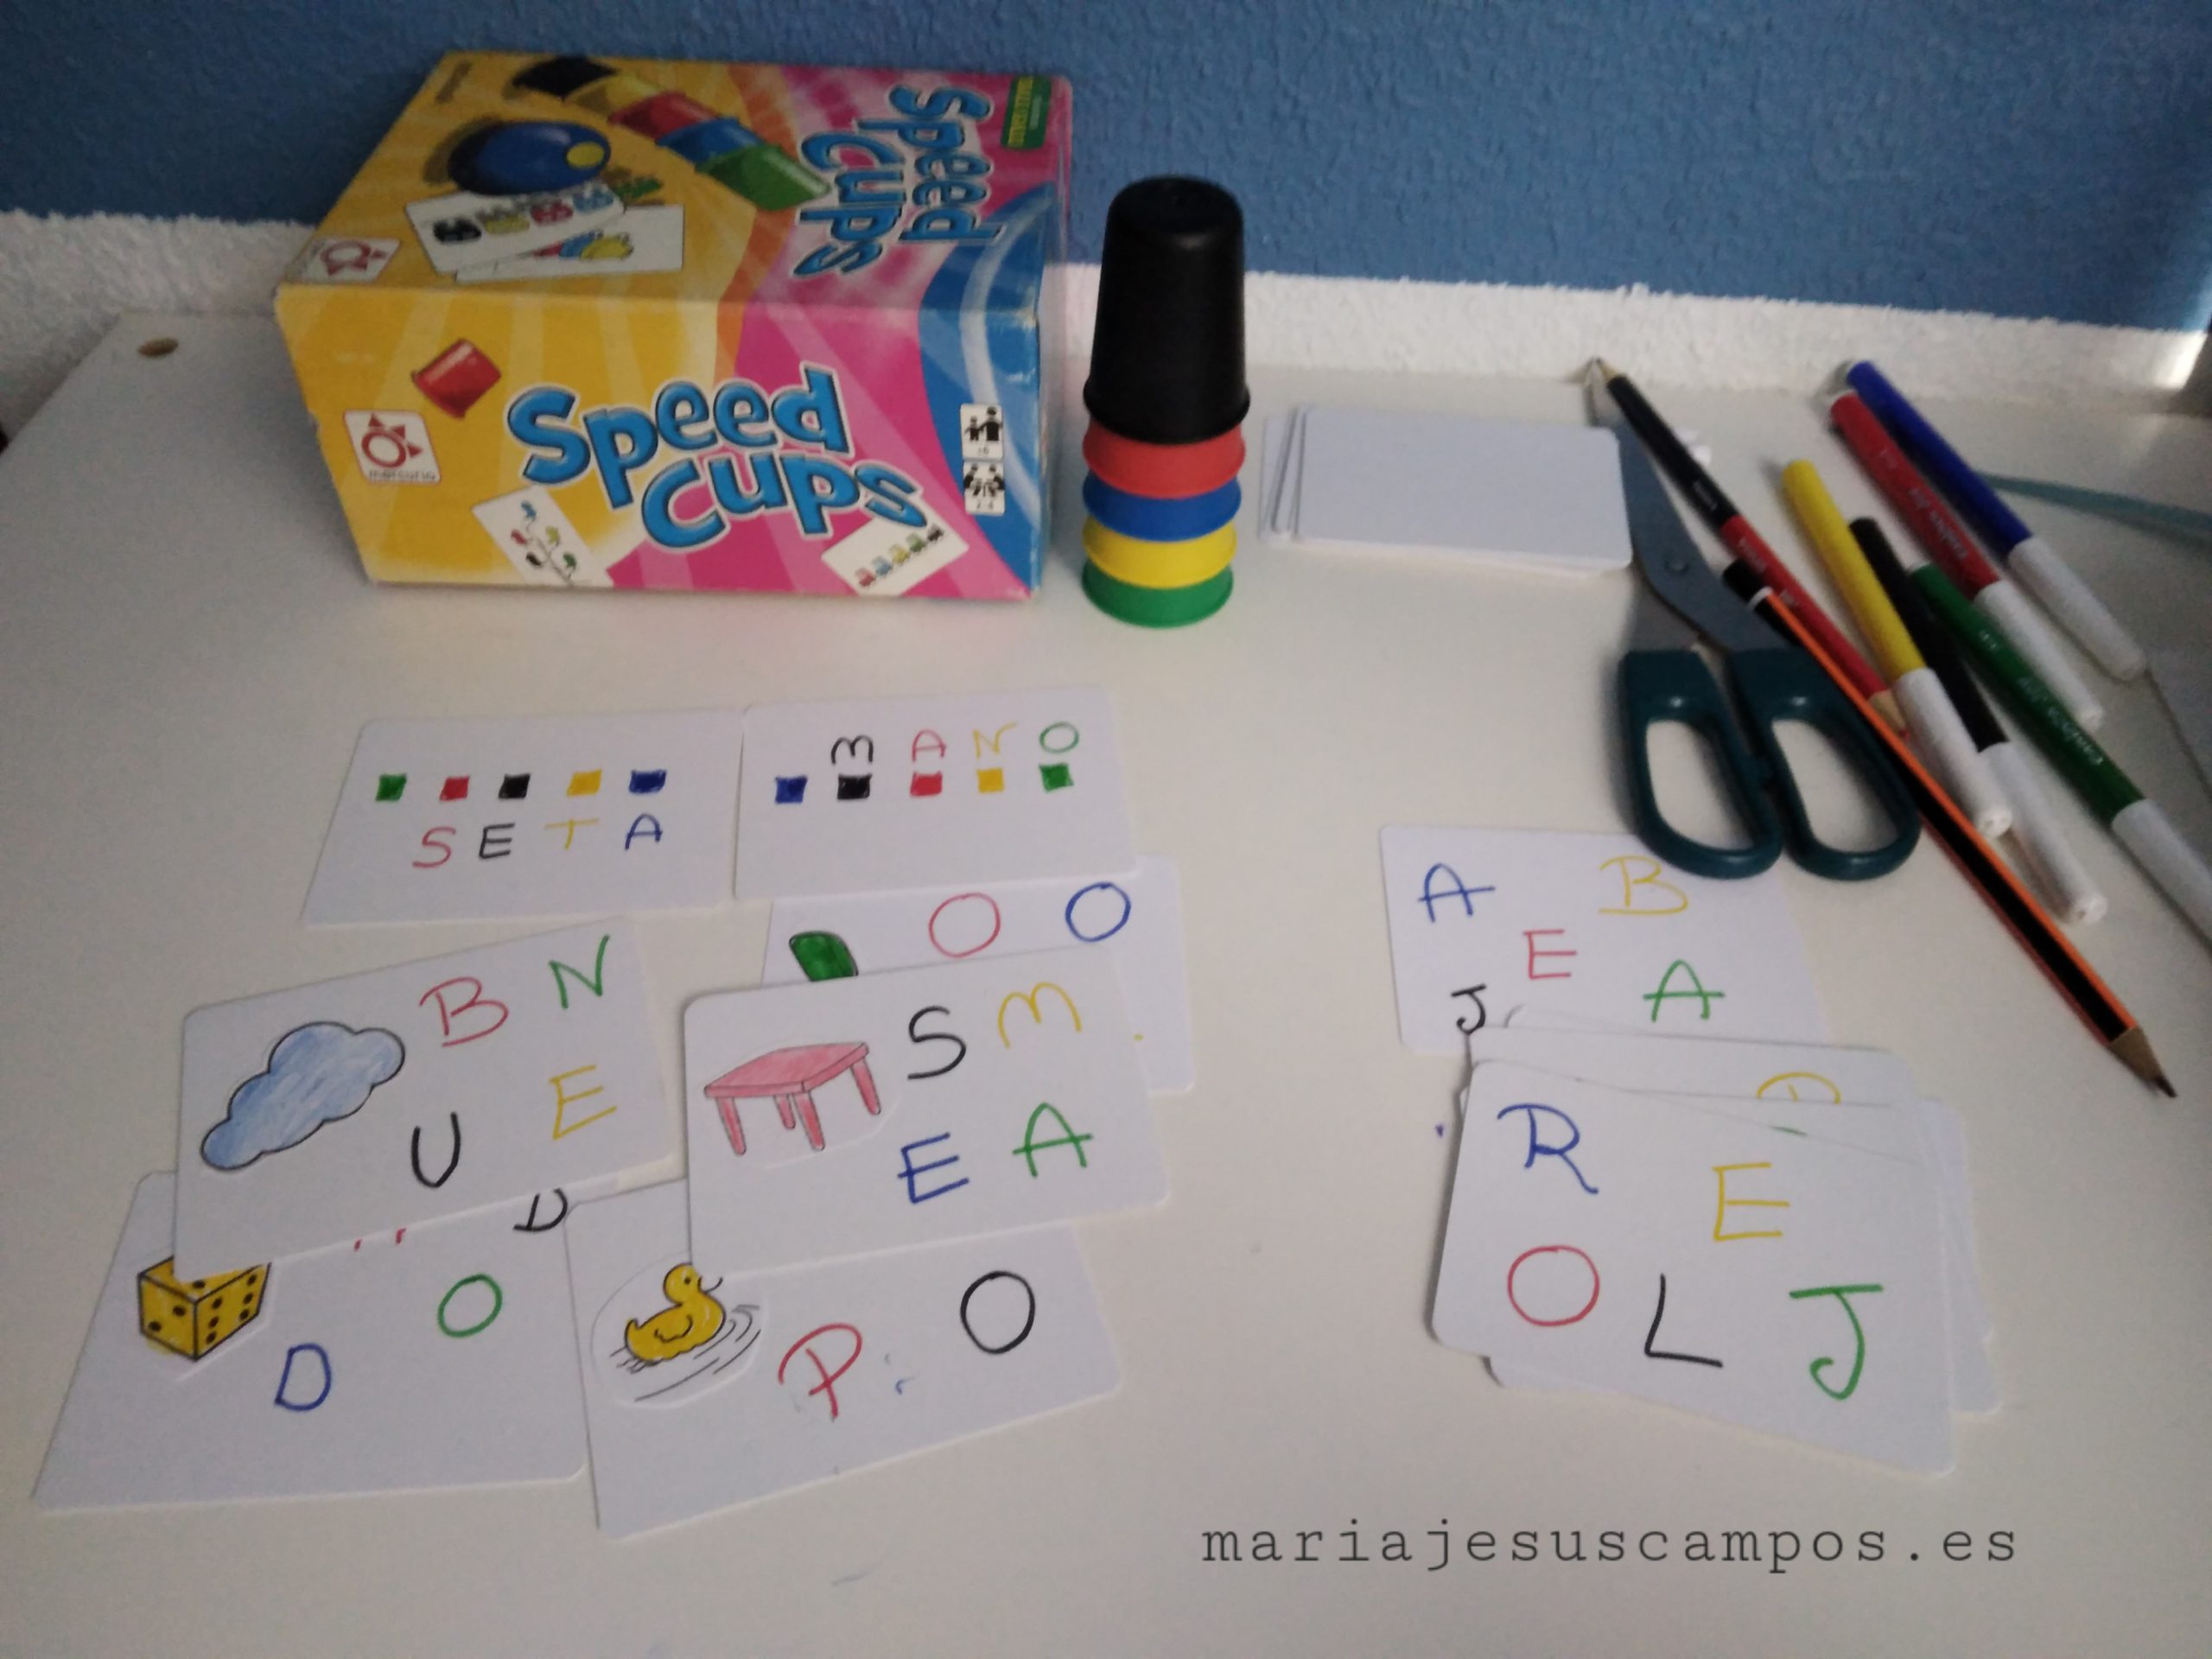 El juego speed cups con tarjetas hechas a mano en las que aparecen palabras con letras de color negro, rojo, amarillo, verde y azul.